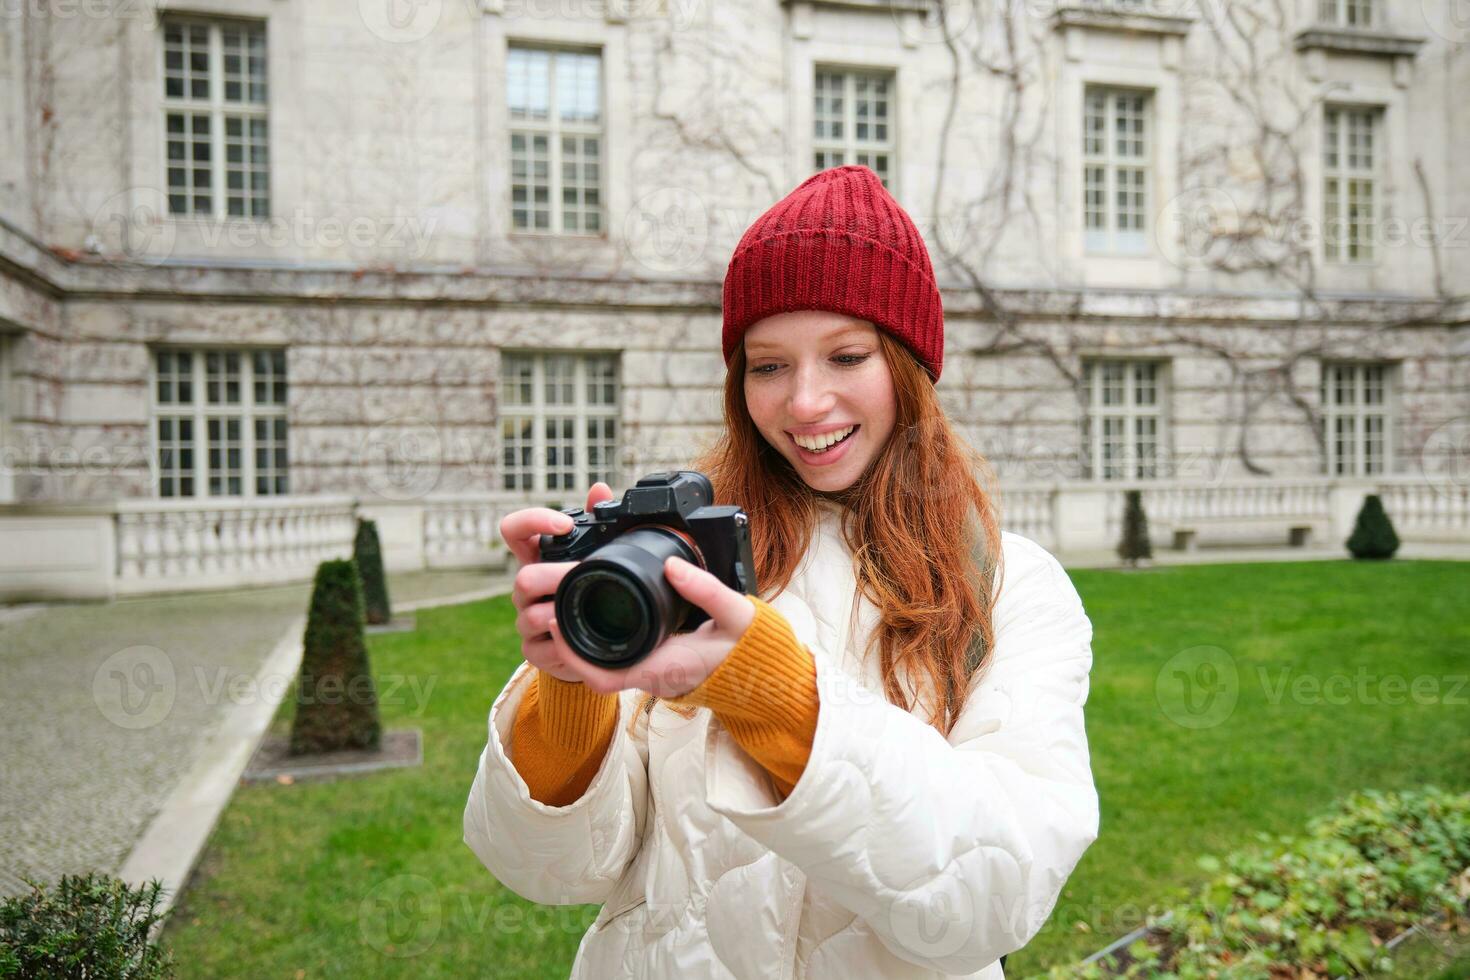 contento pelirrojo niña turista, toma fotos, fotógrafo con profesional cámara camina alrededor ciudad y capturas hermosa imágenes foto